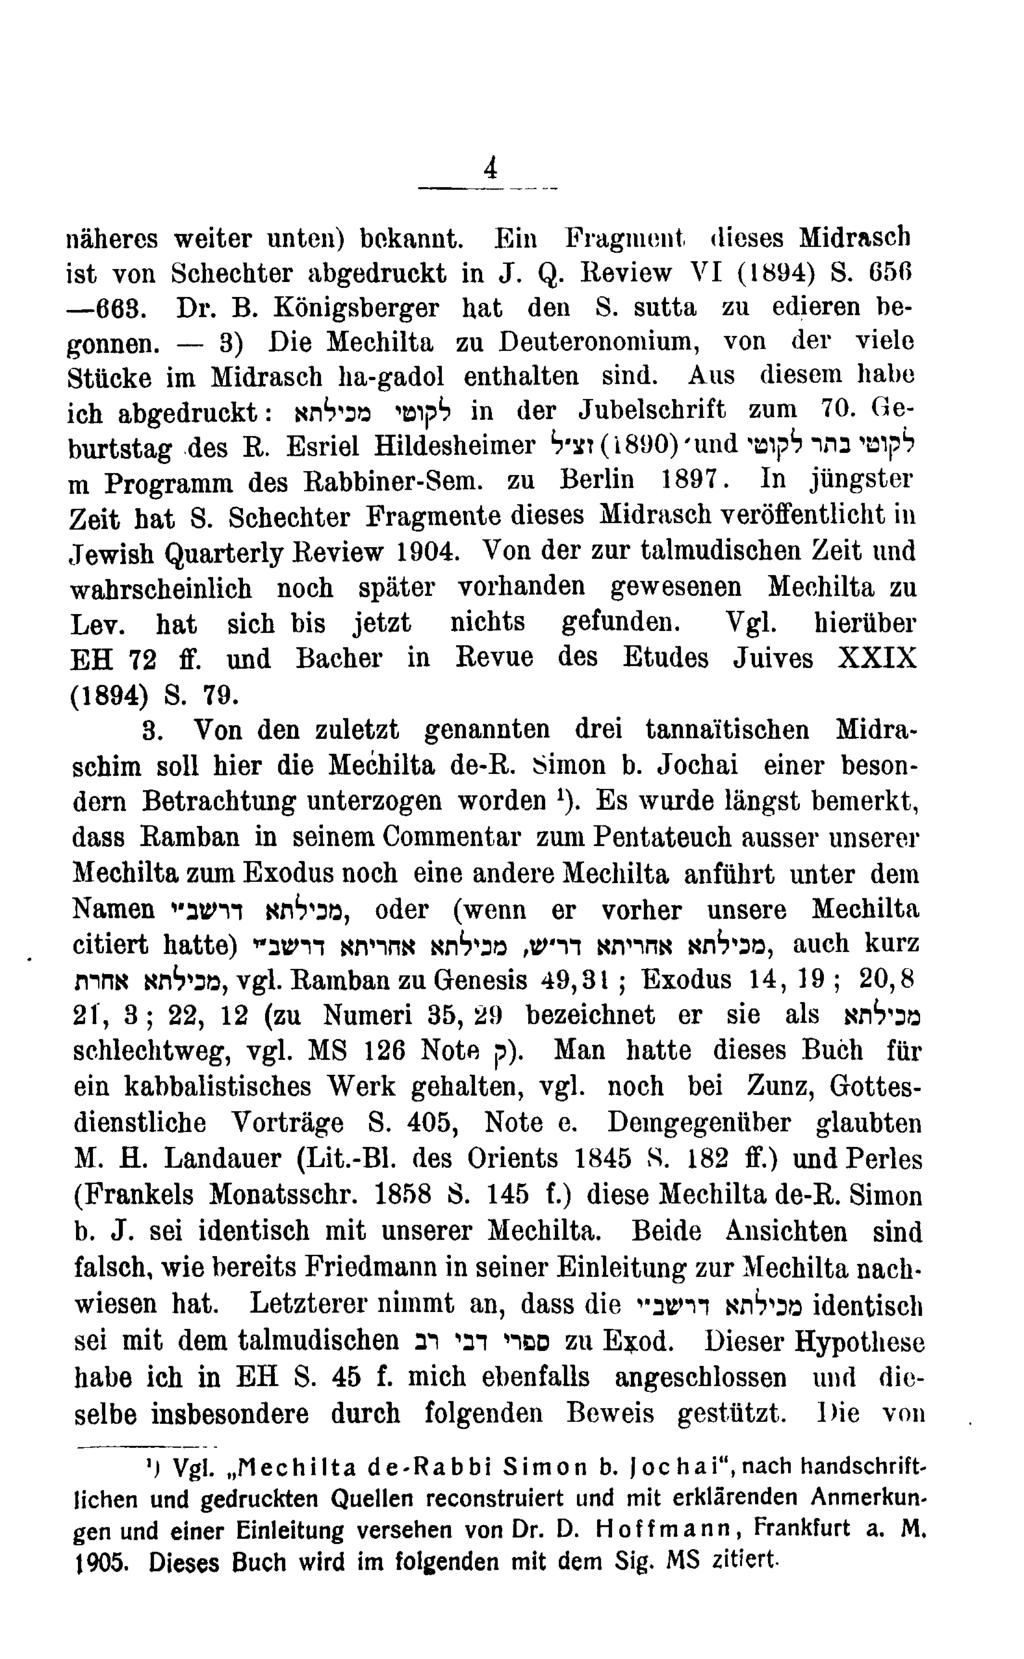 naheres weiter unten) bokannt. Ein Fragment dieses Midrasch ist von Schechter abgedruckt in J. Q. Review VI (1894) S. 656 668. Dr. B. Konigsberger hat den S. sutta zu edieren begonnen.